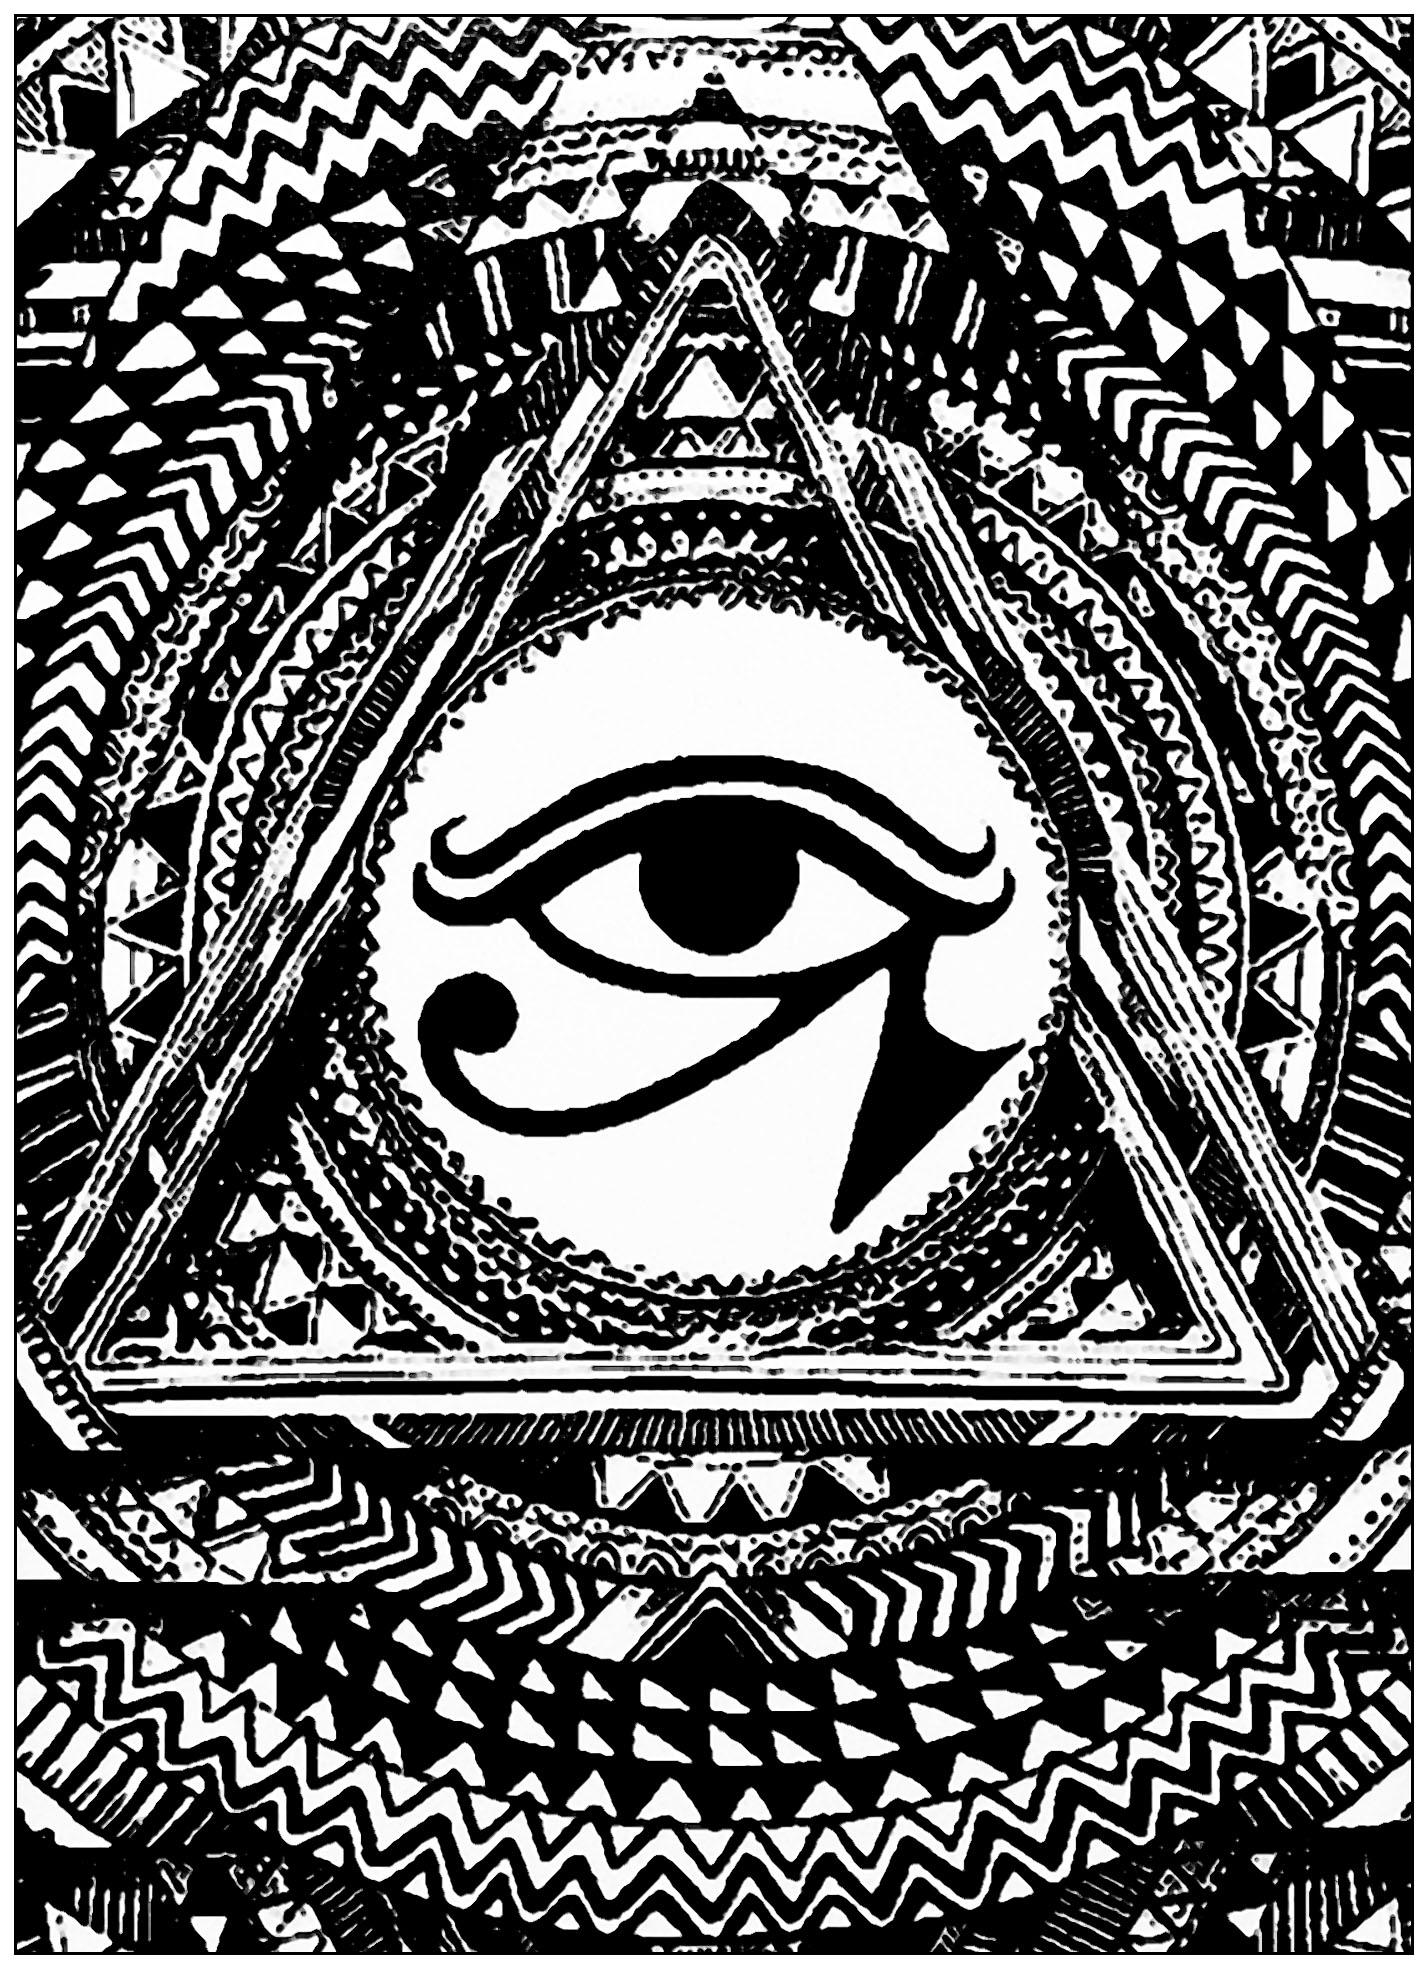 Auge des Horus in einem Dreieck. Das Auge des Horus wurde als Zeichen für Wohlstand und Schutz verwendet, abgeleitet aus dem Mythos von Isis und Osiris. Dieses Symbol weist eine erstaunliche Verbindung zwischen neuroanatomischer Struktur und Funktion auf.